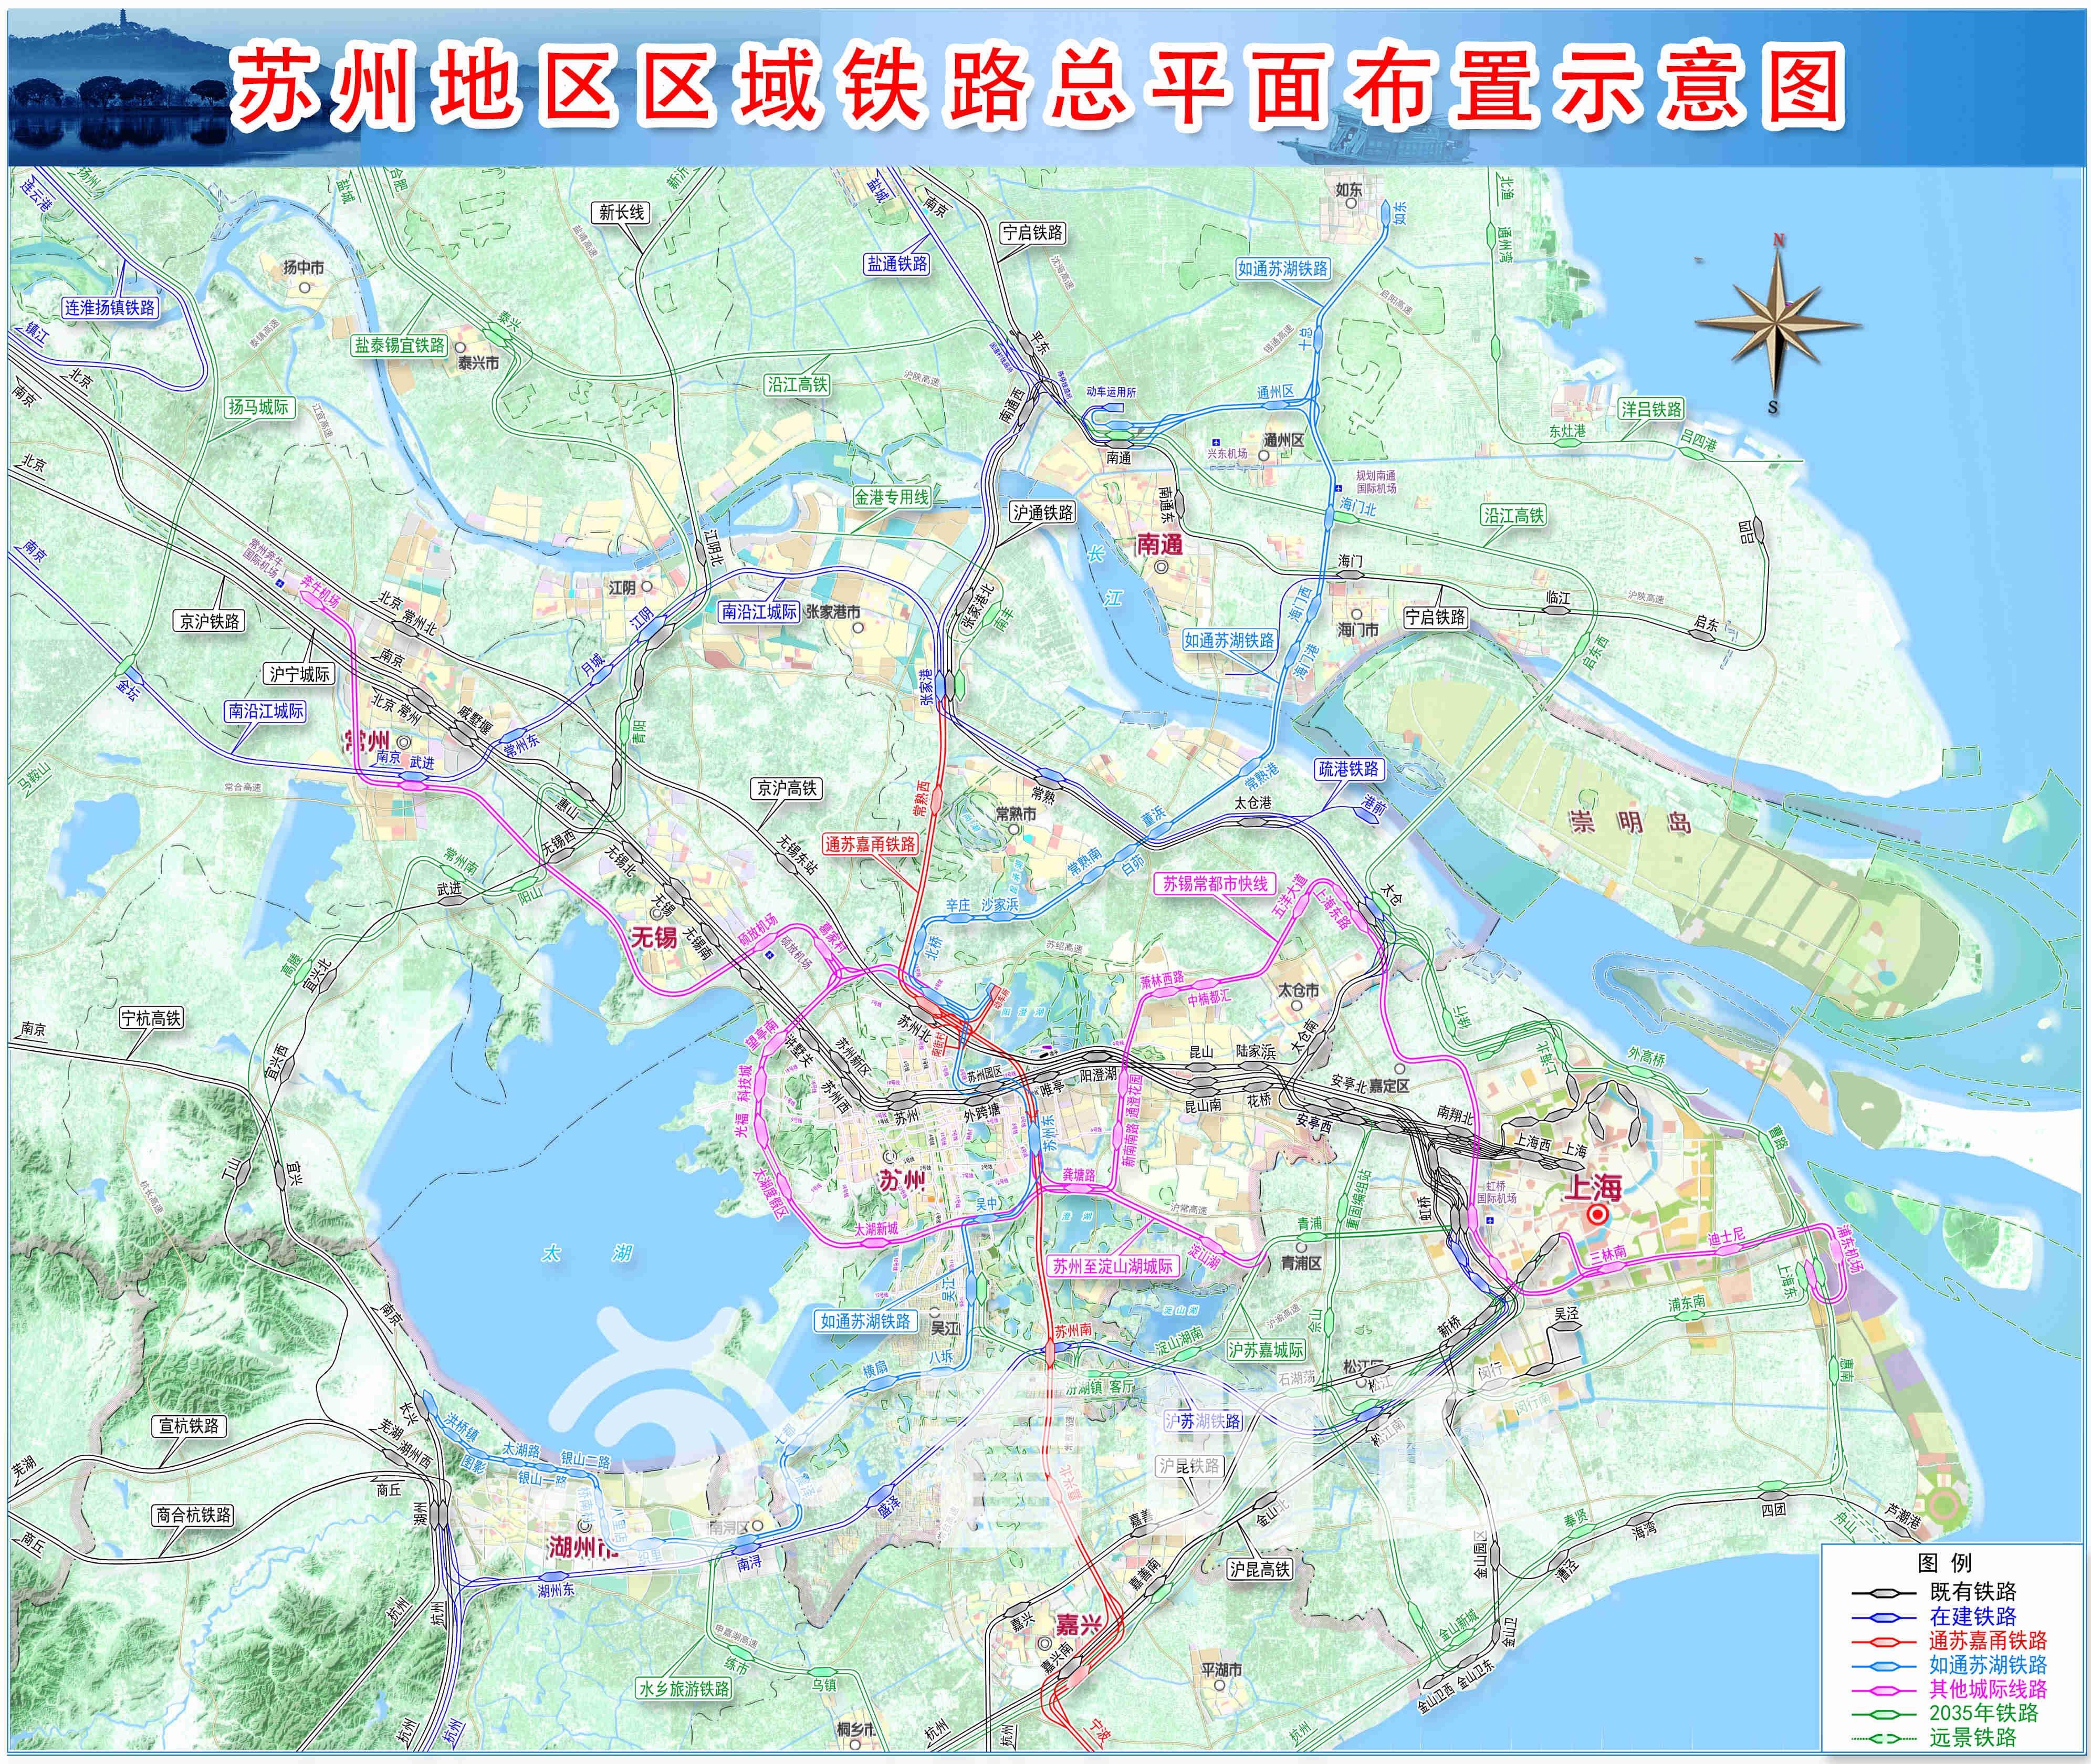 为什么浙江省修建和规划的城际铁路包括省会杭州修建和规划的城际铁路